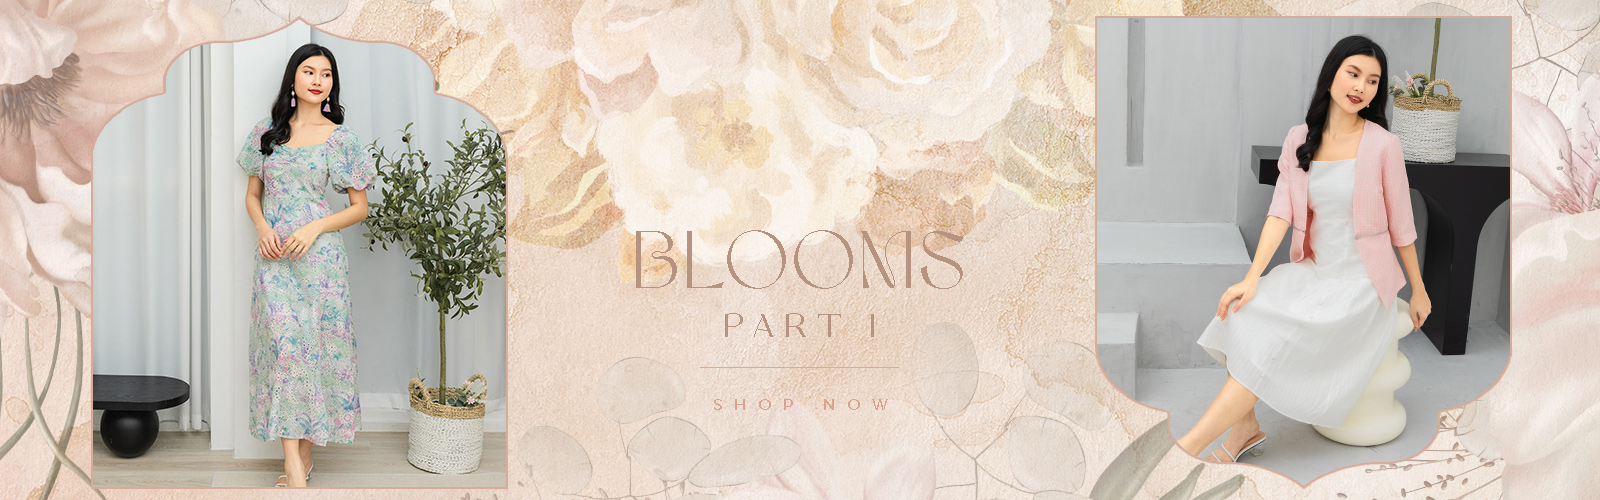 Blooms Part I